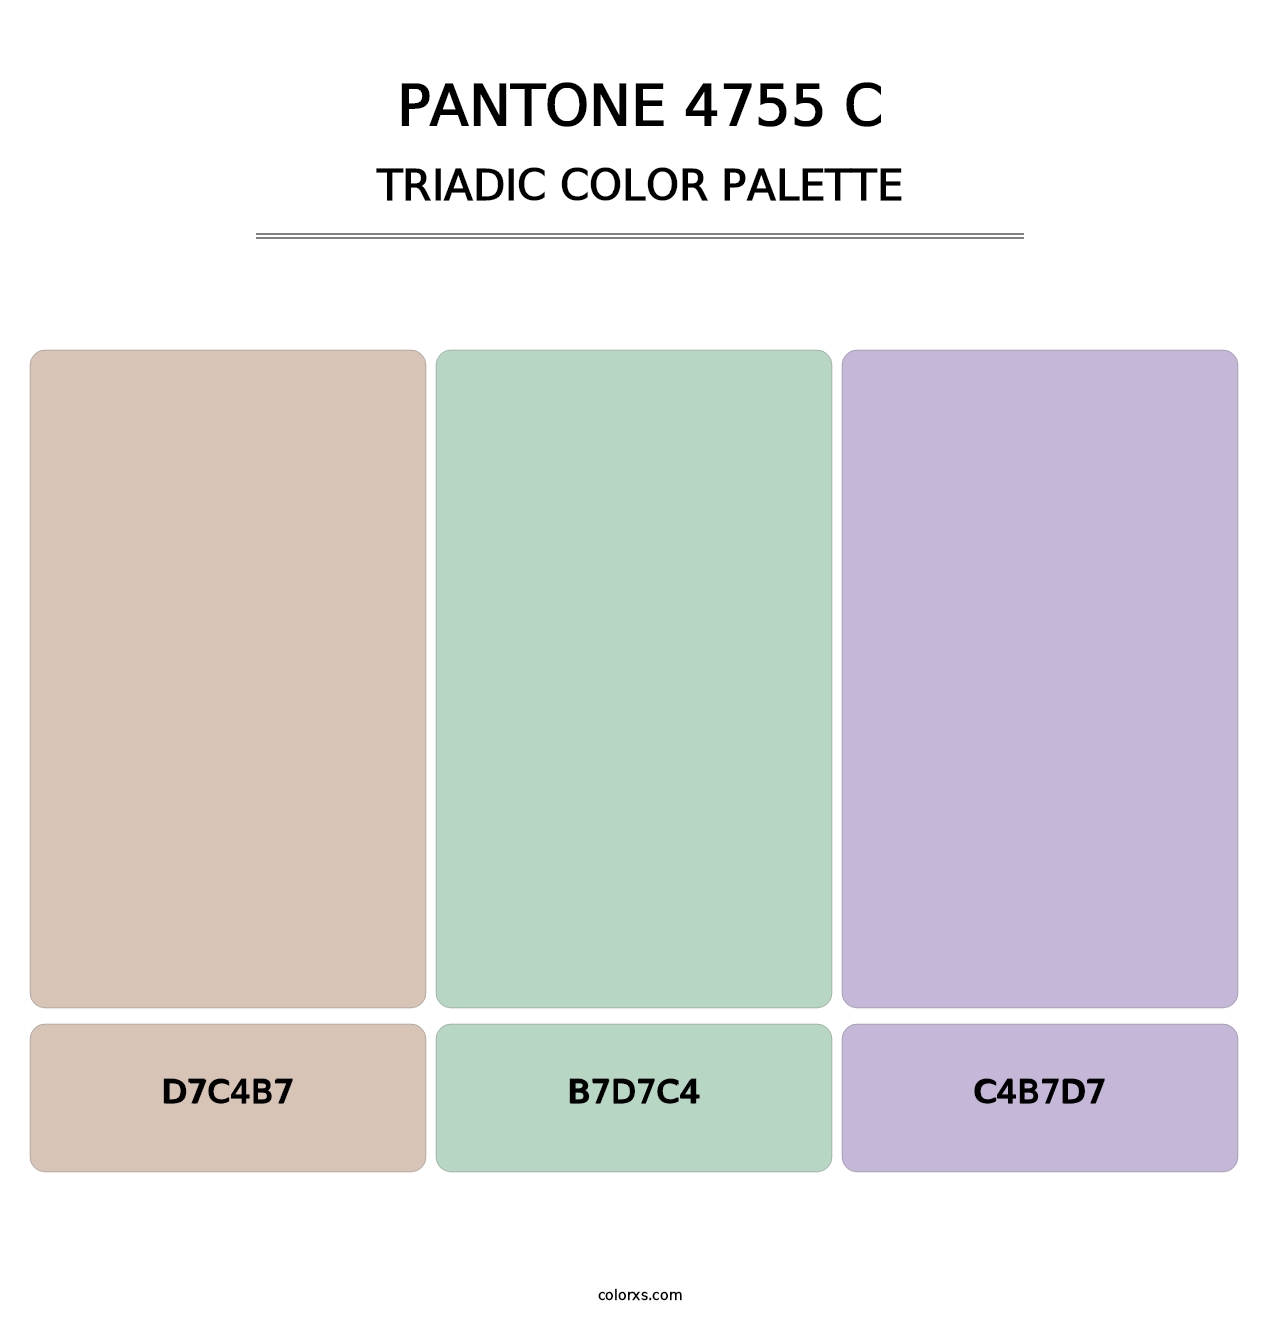 PANTONE 4755 C - Triadic Color Palette